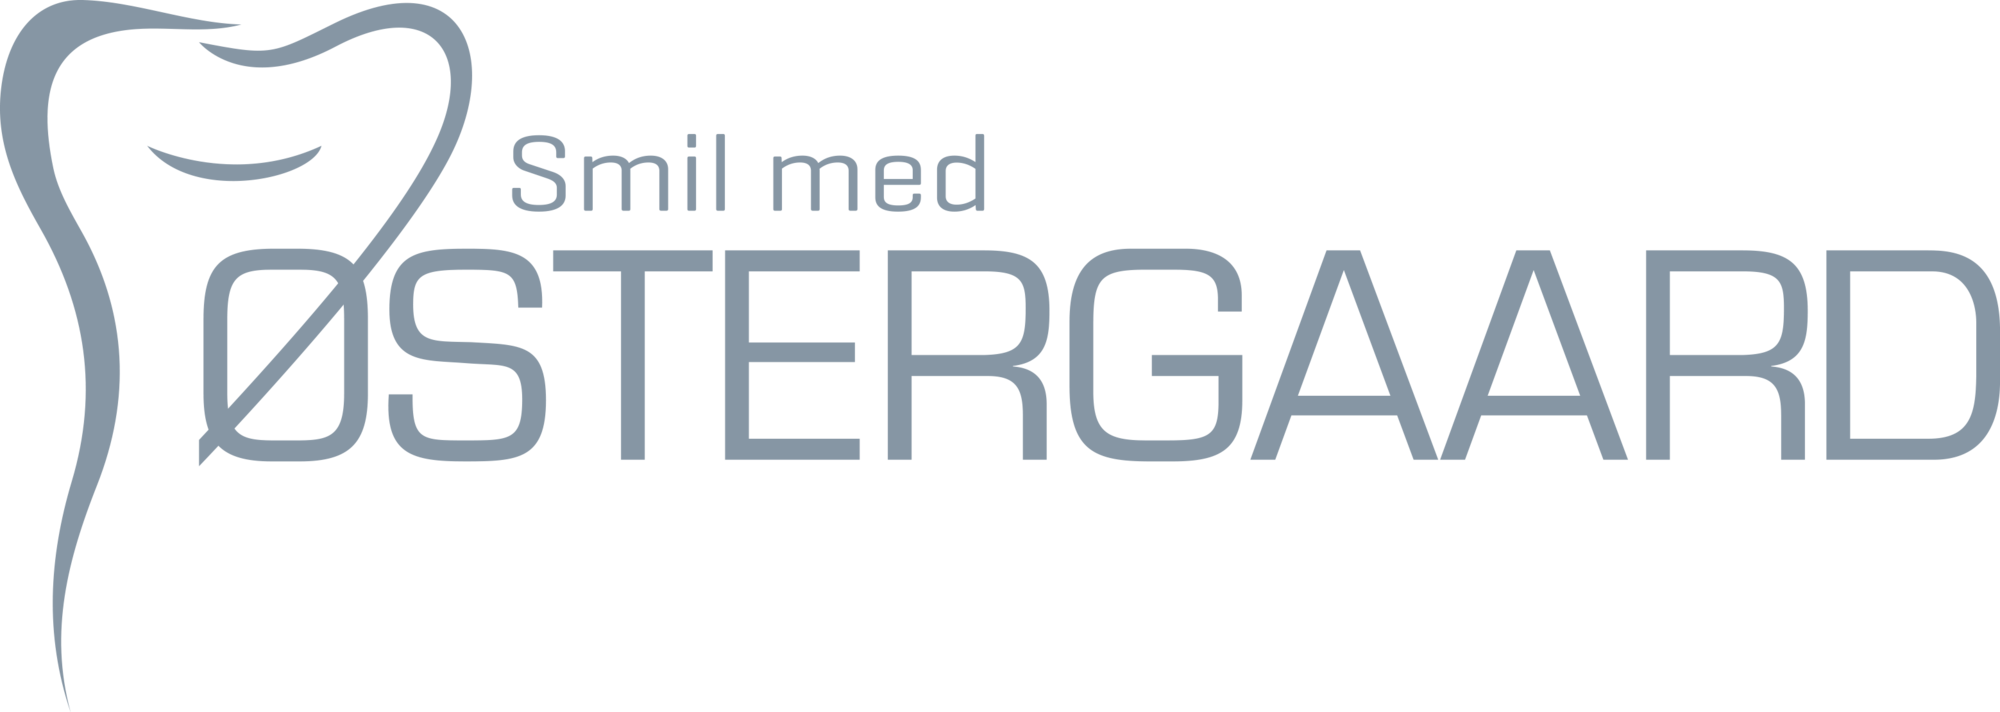 Tandlæge Smil med Østergaard: icon